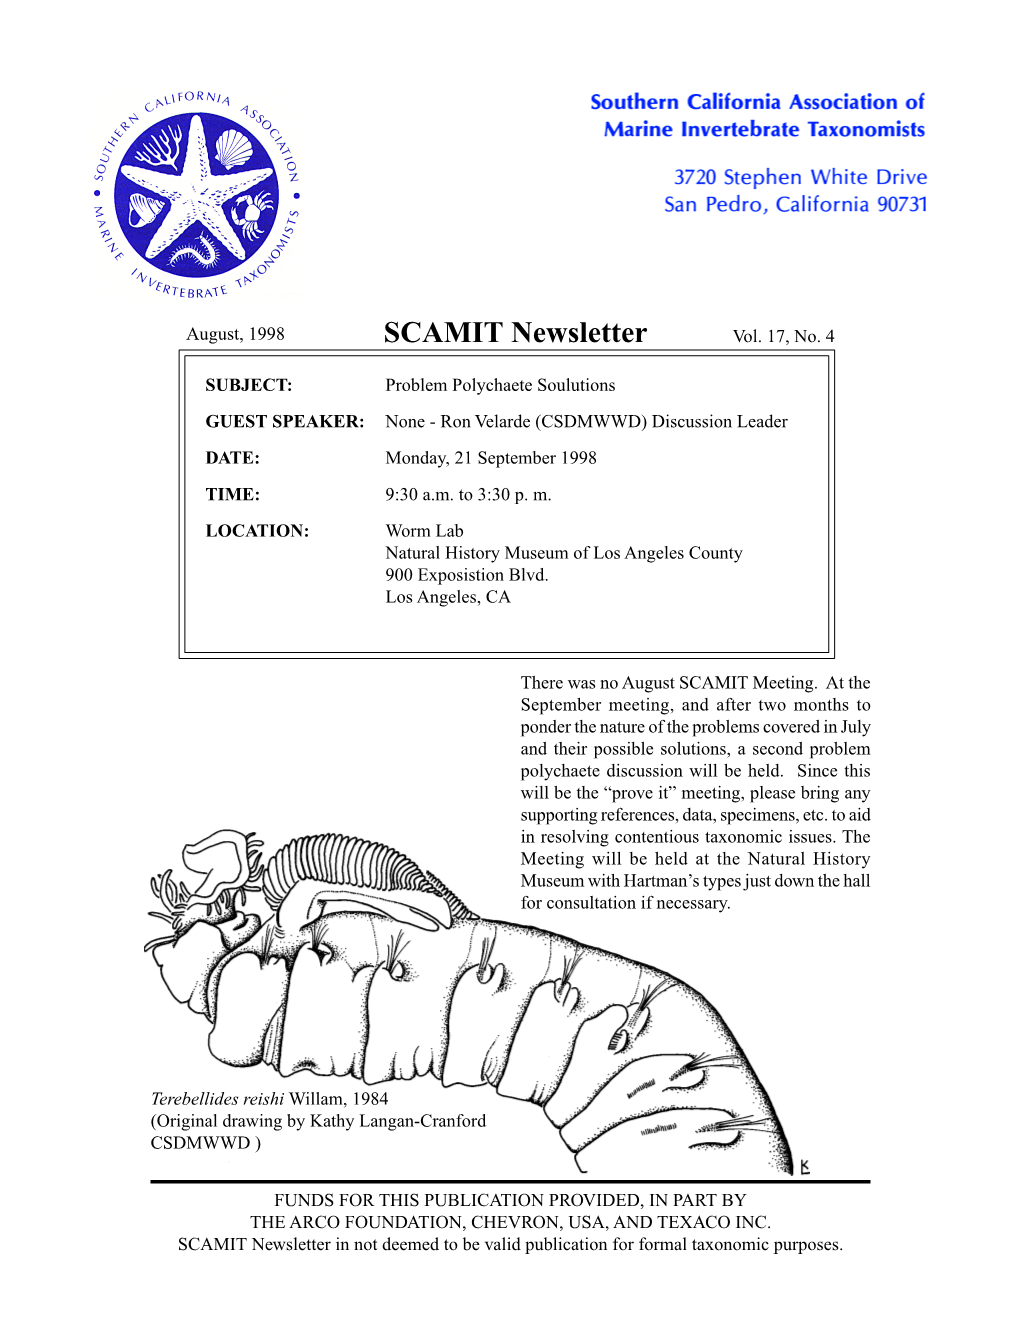 SCAMIT Newsletter Vol. 17 No. 4 1998 August